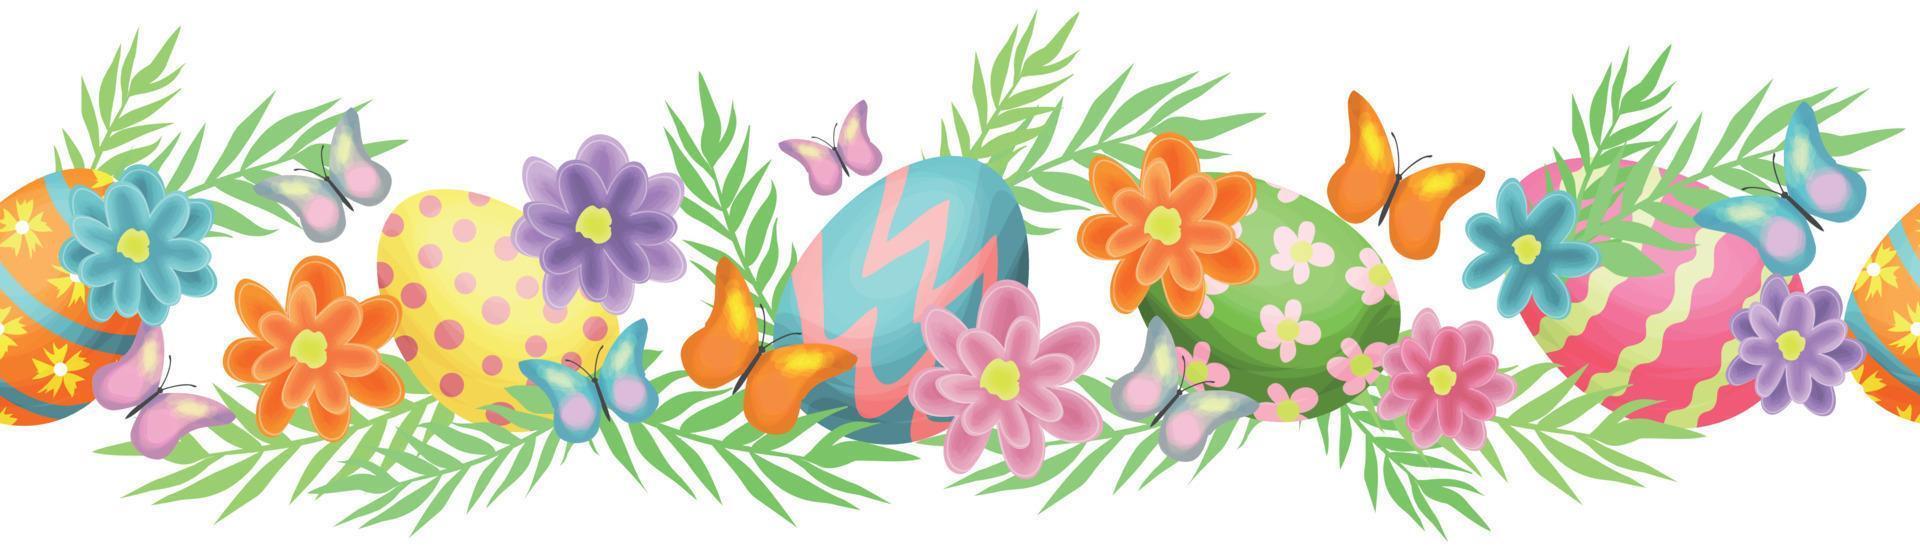 senza soluzione di continuità confine con Pasqua uova e foglie, fiori, farfalle. il uova siamo rosa, blu e arancia. isolato vettore illustrazione